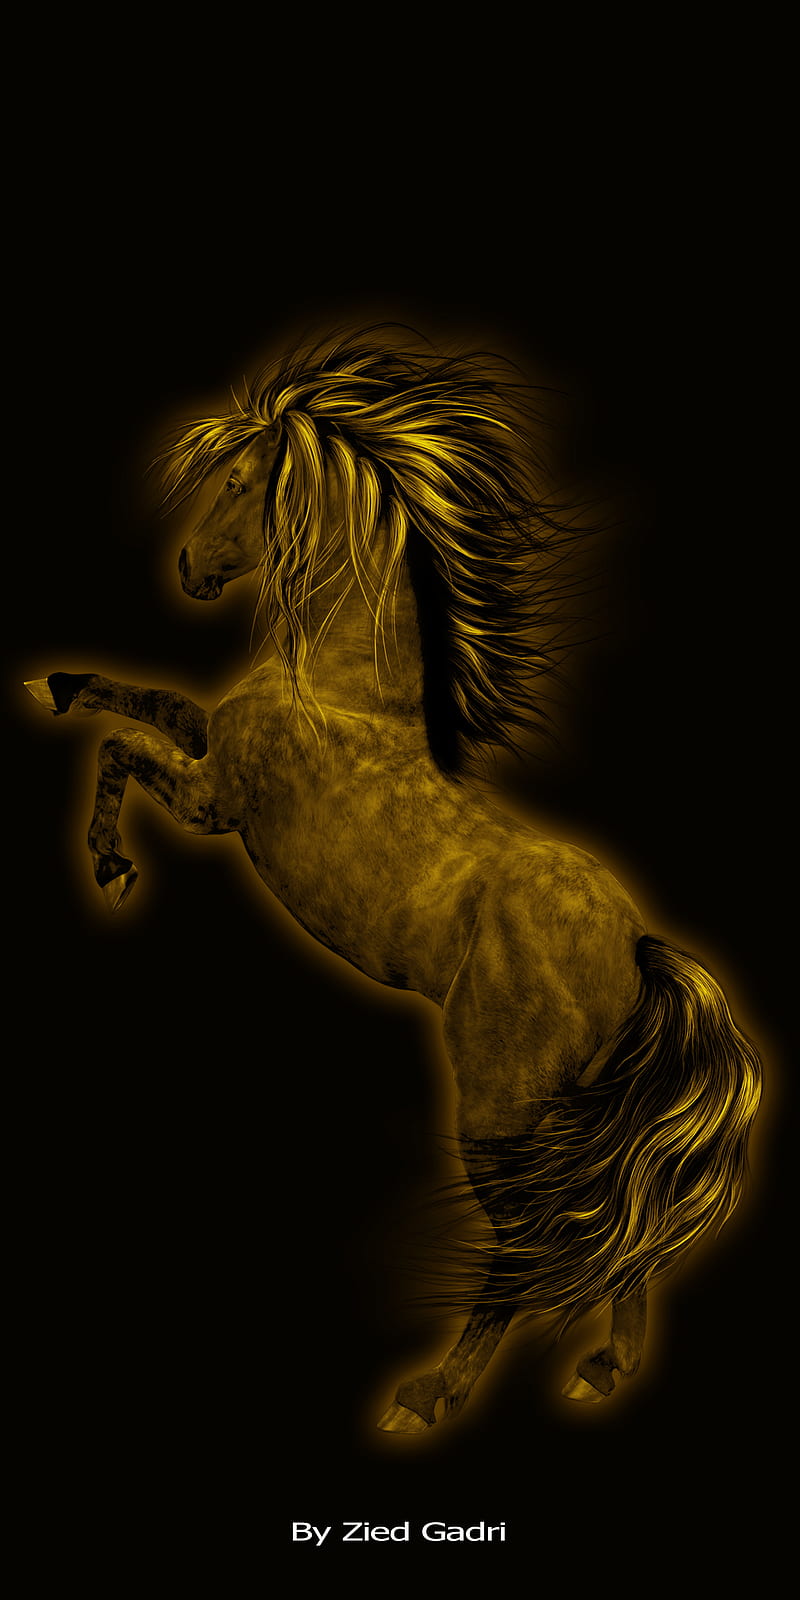 Golden Horse: Hình ảnh này cho thấy một con ngựa vàng kiêu hãnh và mạnh mẽ. Với sự kết hợp giữa vàng và những tông màu nổi bật khác, bức ảnh sẽ làm cho bất kỳ không gian nào trở nên nổi bật hơn.